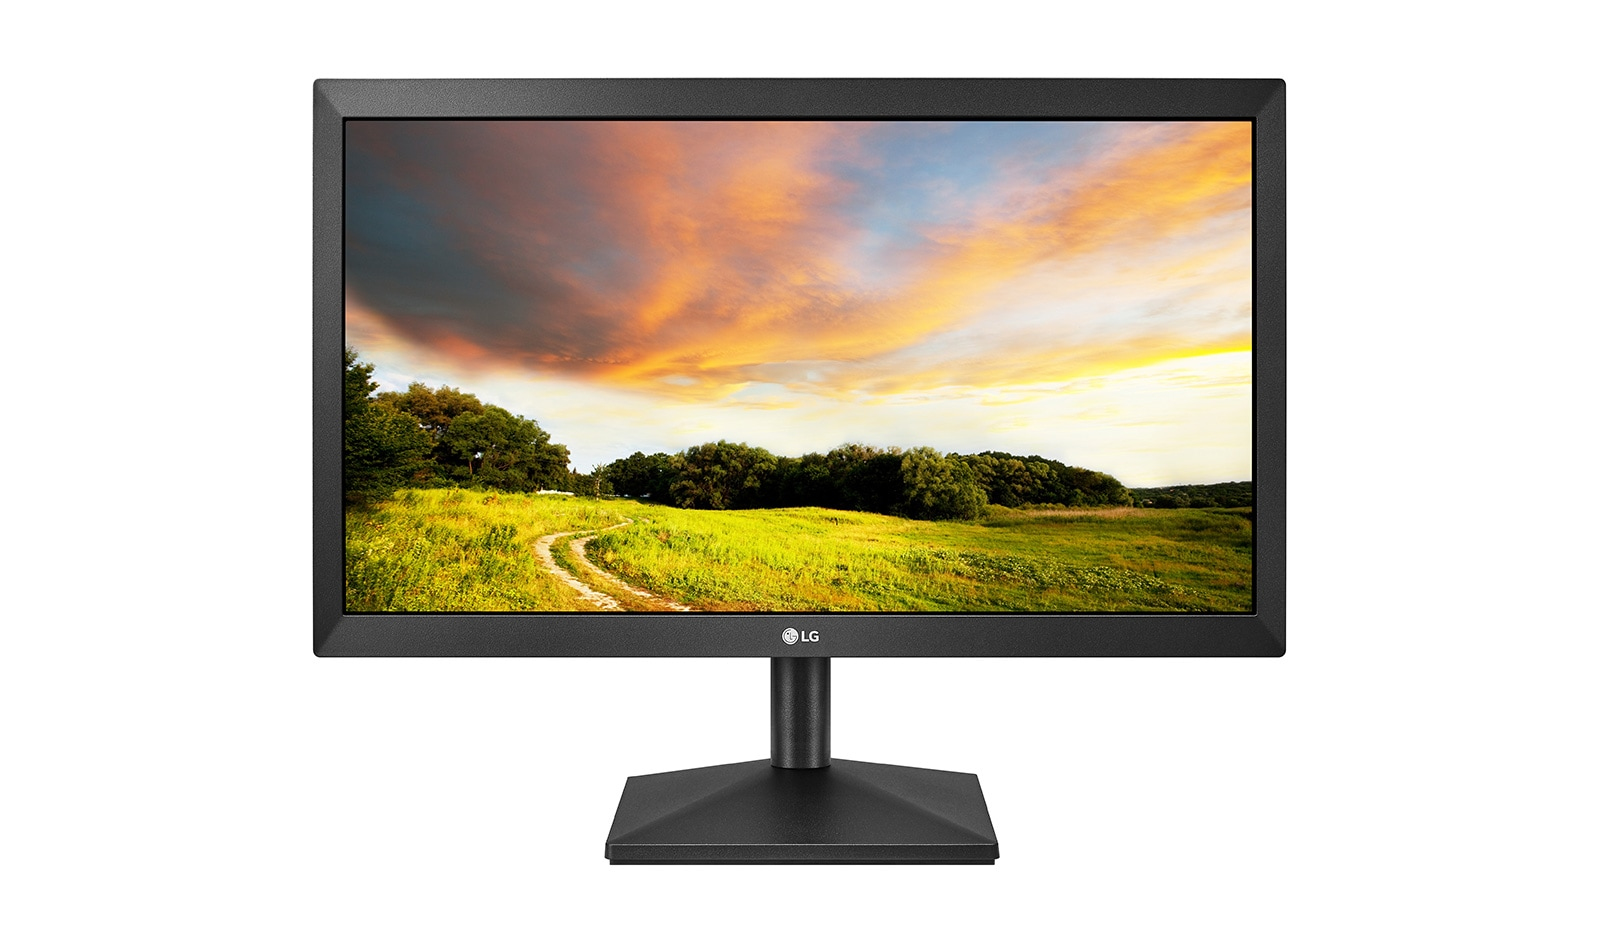 LG 20MK400H computer monitor